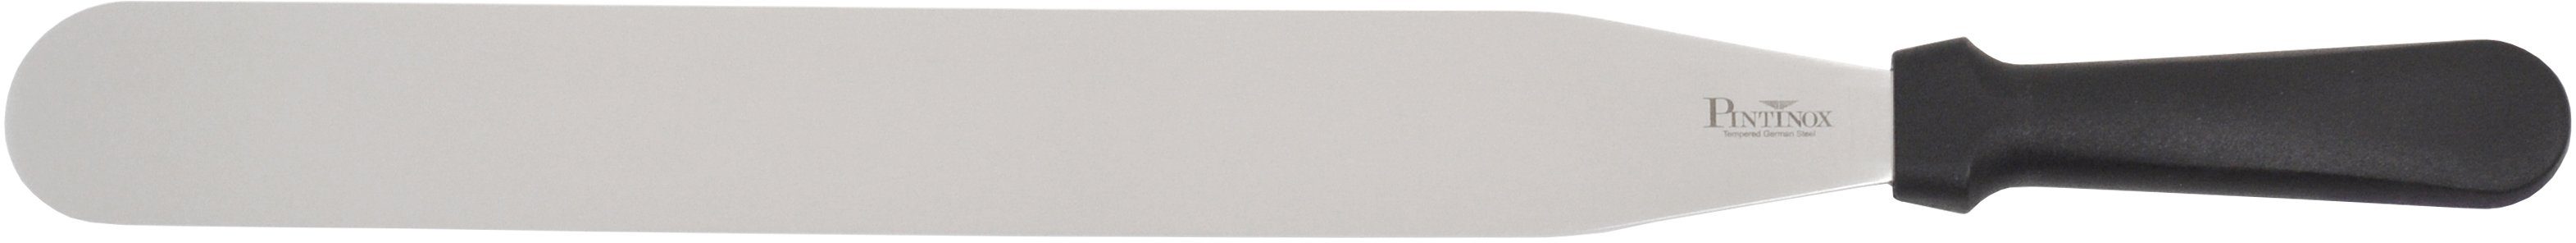 PINTINOX Streichpalette Professional, Edelstahl, spülmaschinengeeignet, Lg. 35,5 cm | Streichpaletten